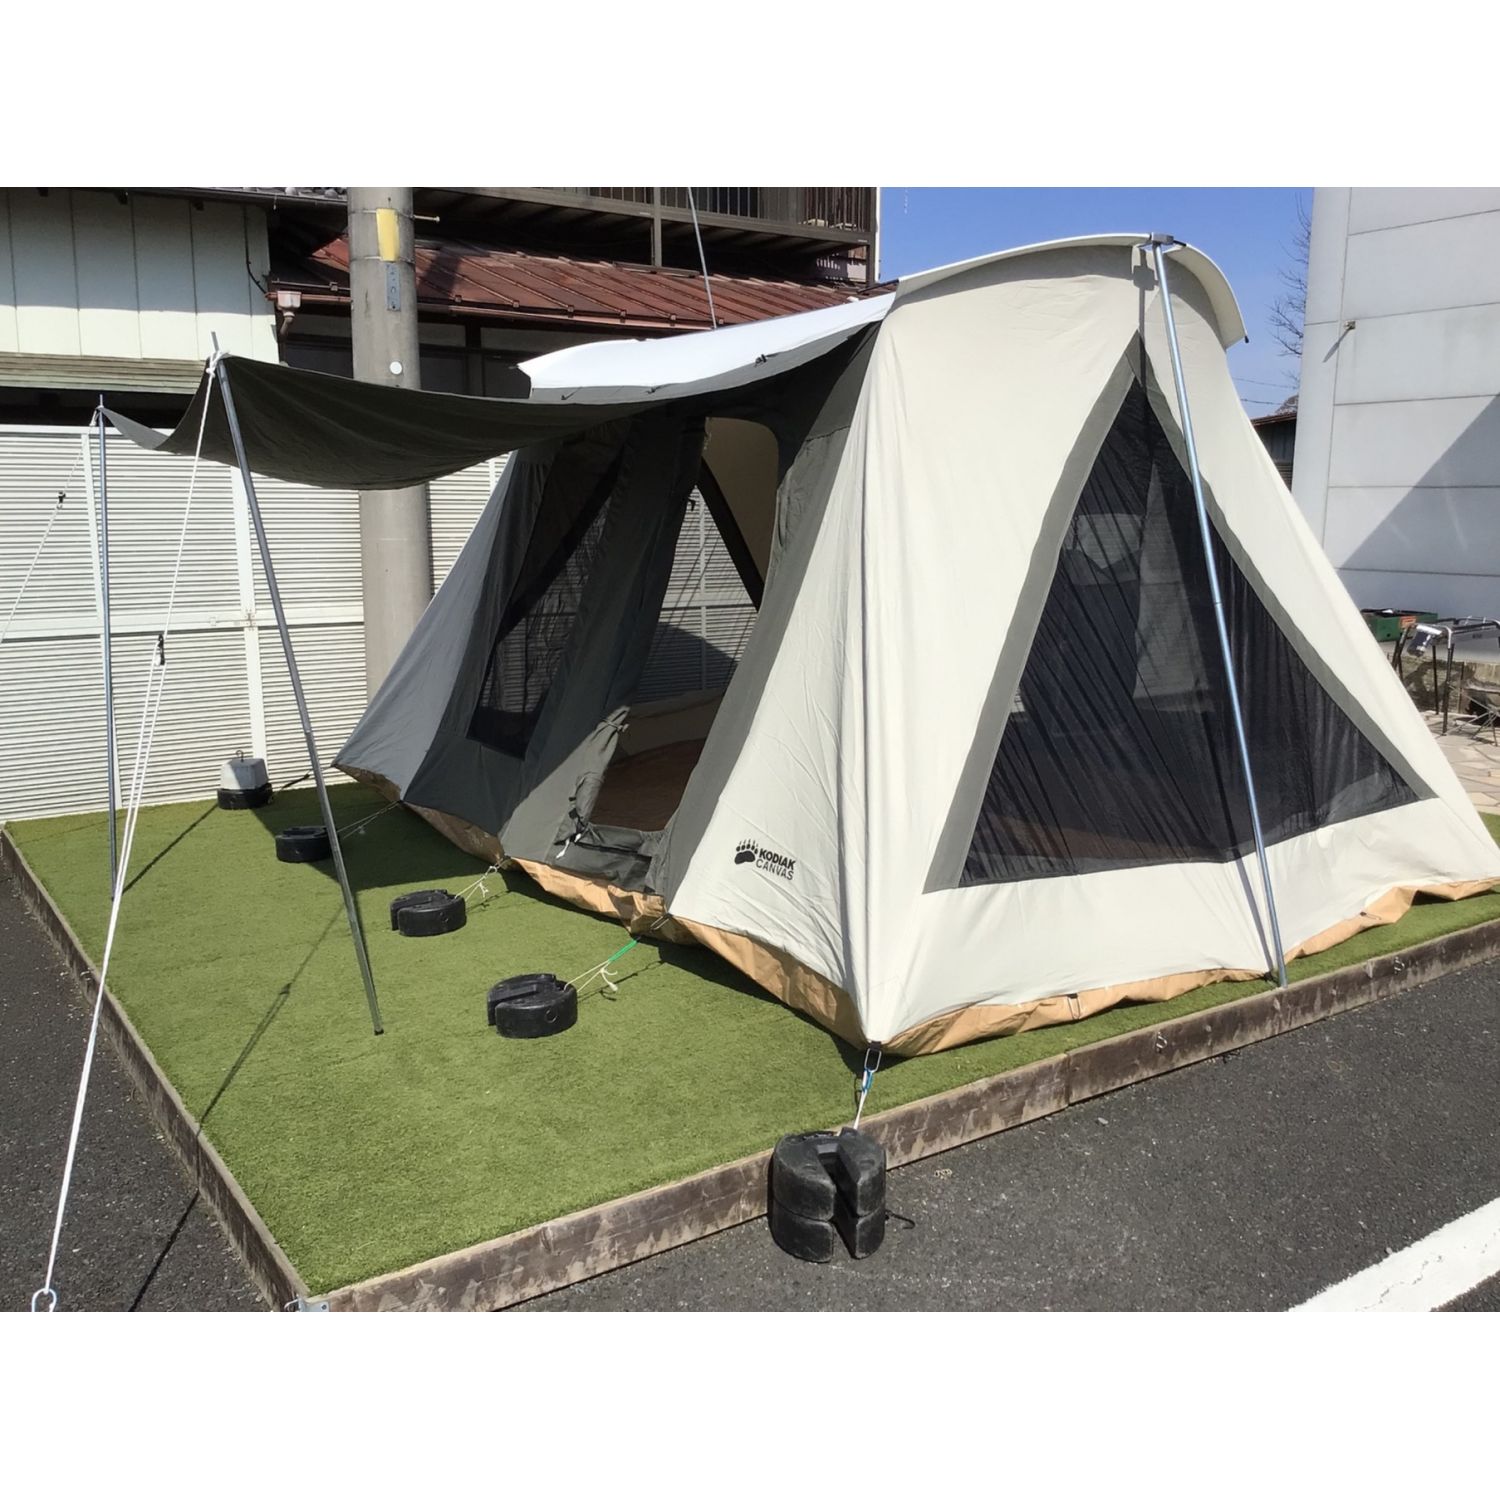 キャンプ用テント コディアックキャンバス Kodiak Canvas Flex-Bow コットンテント グランピングテント 大型 テント ファミリー キャンプ